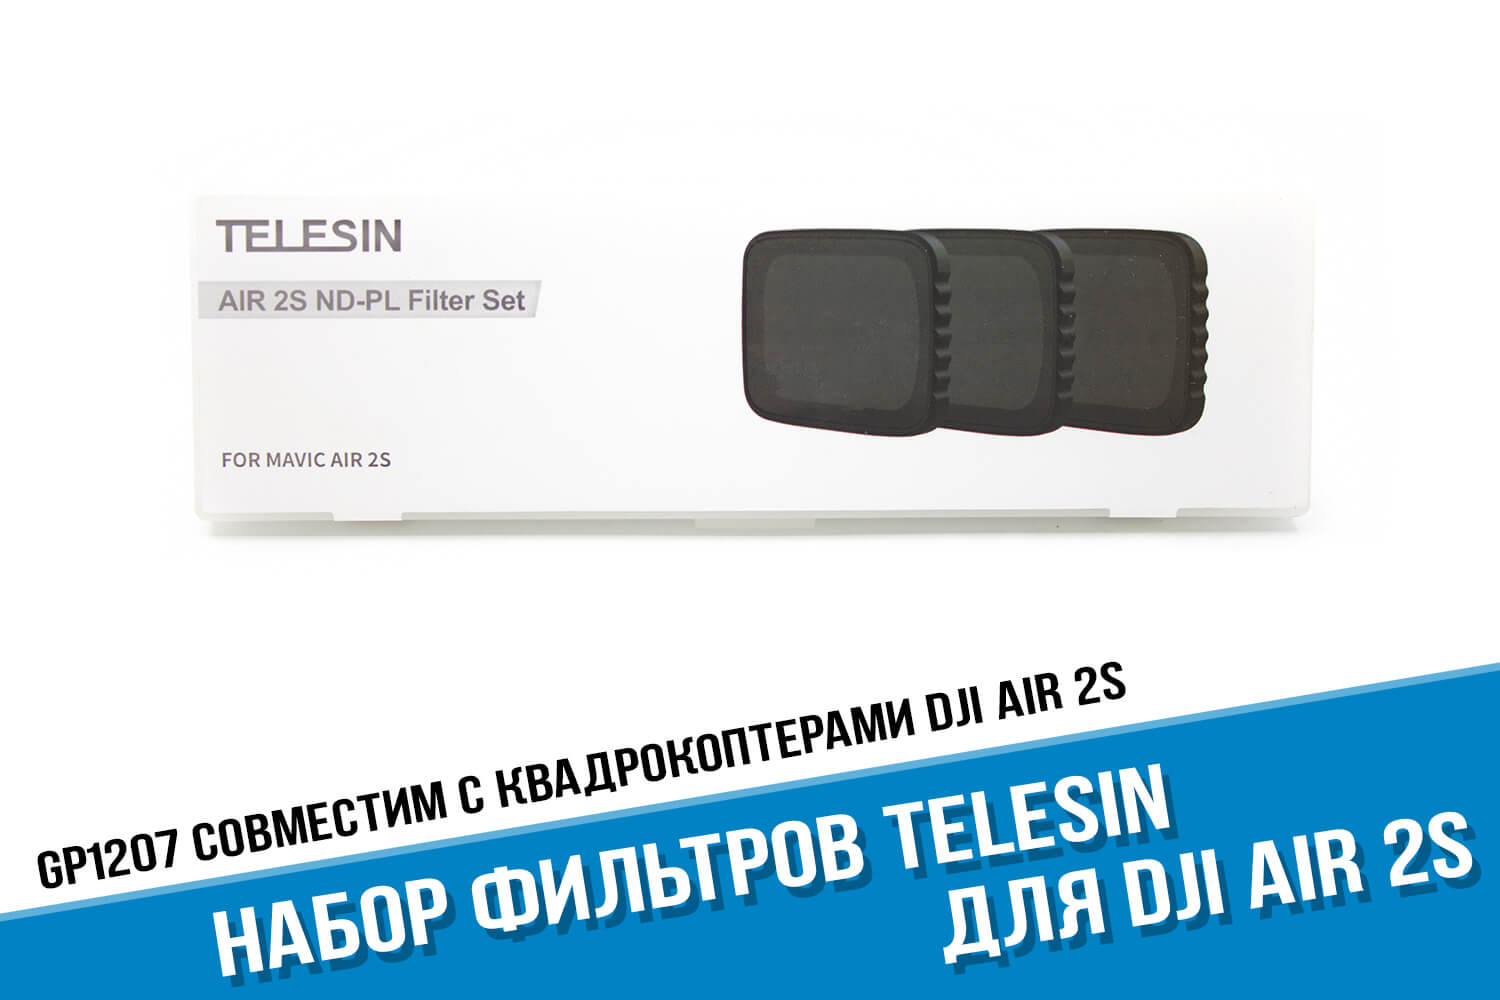 Поляризационные фильтры для DJI Air 2S фирмы Telesin